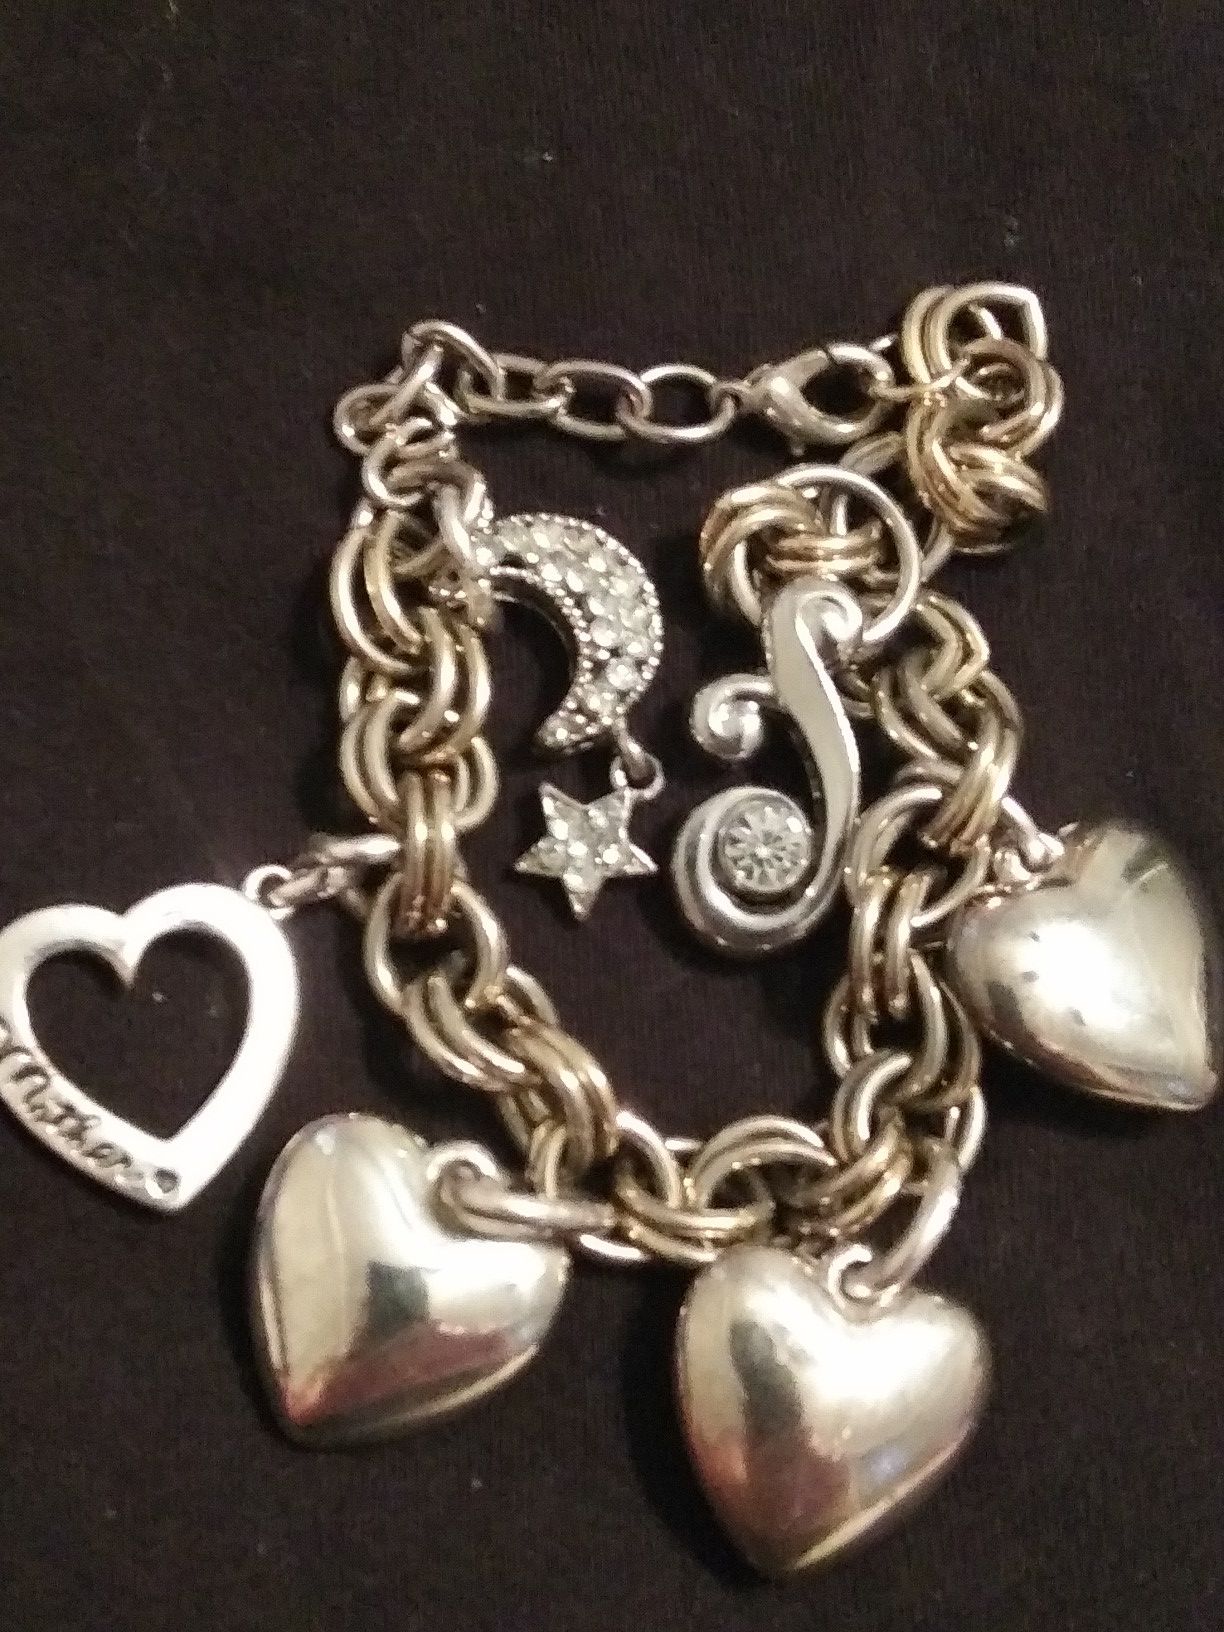 Heart charm bracelet